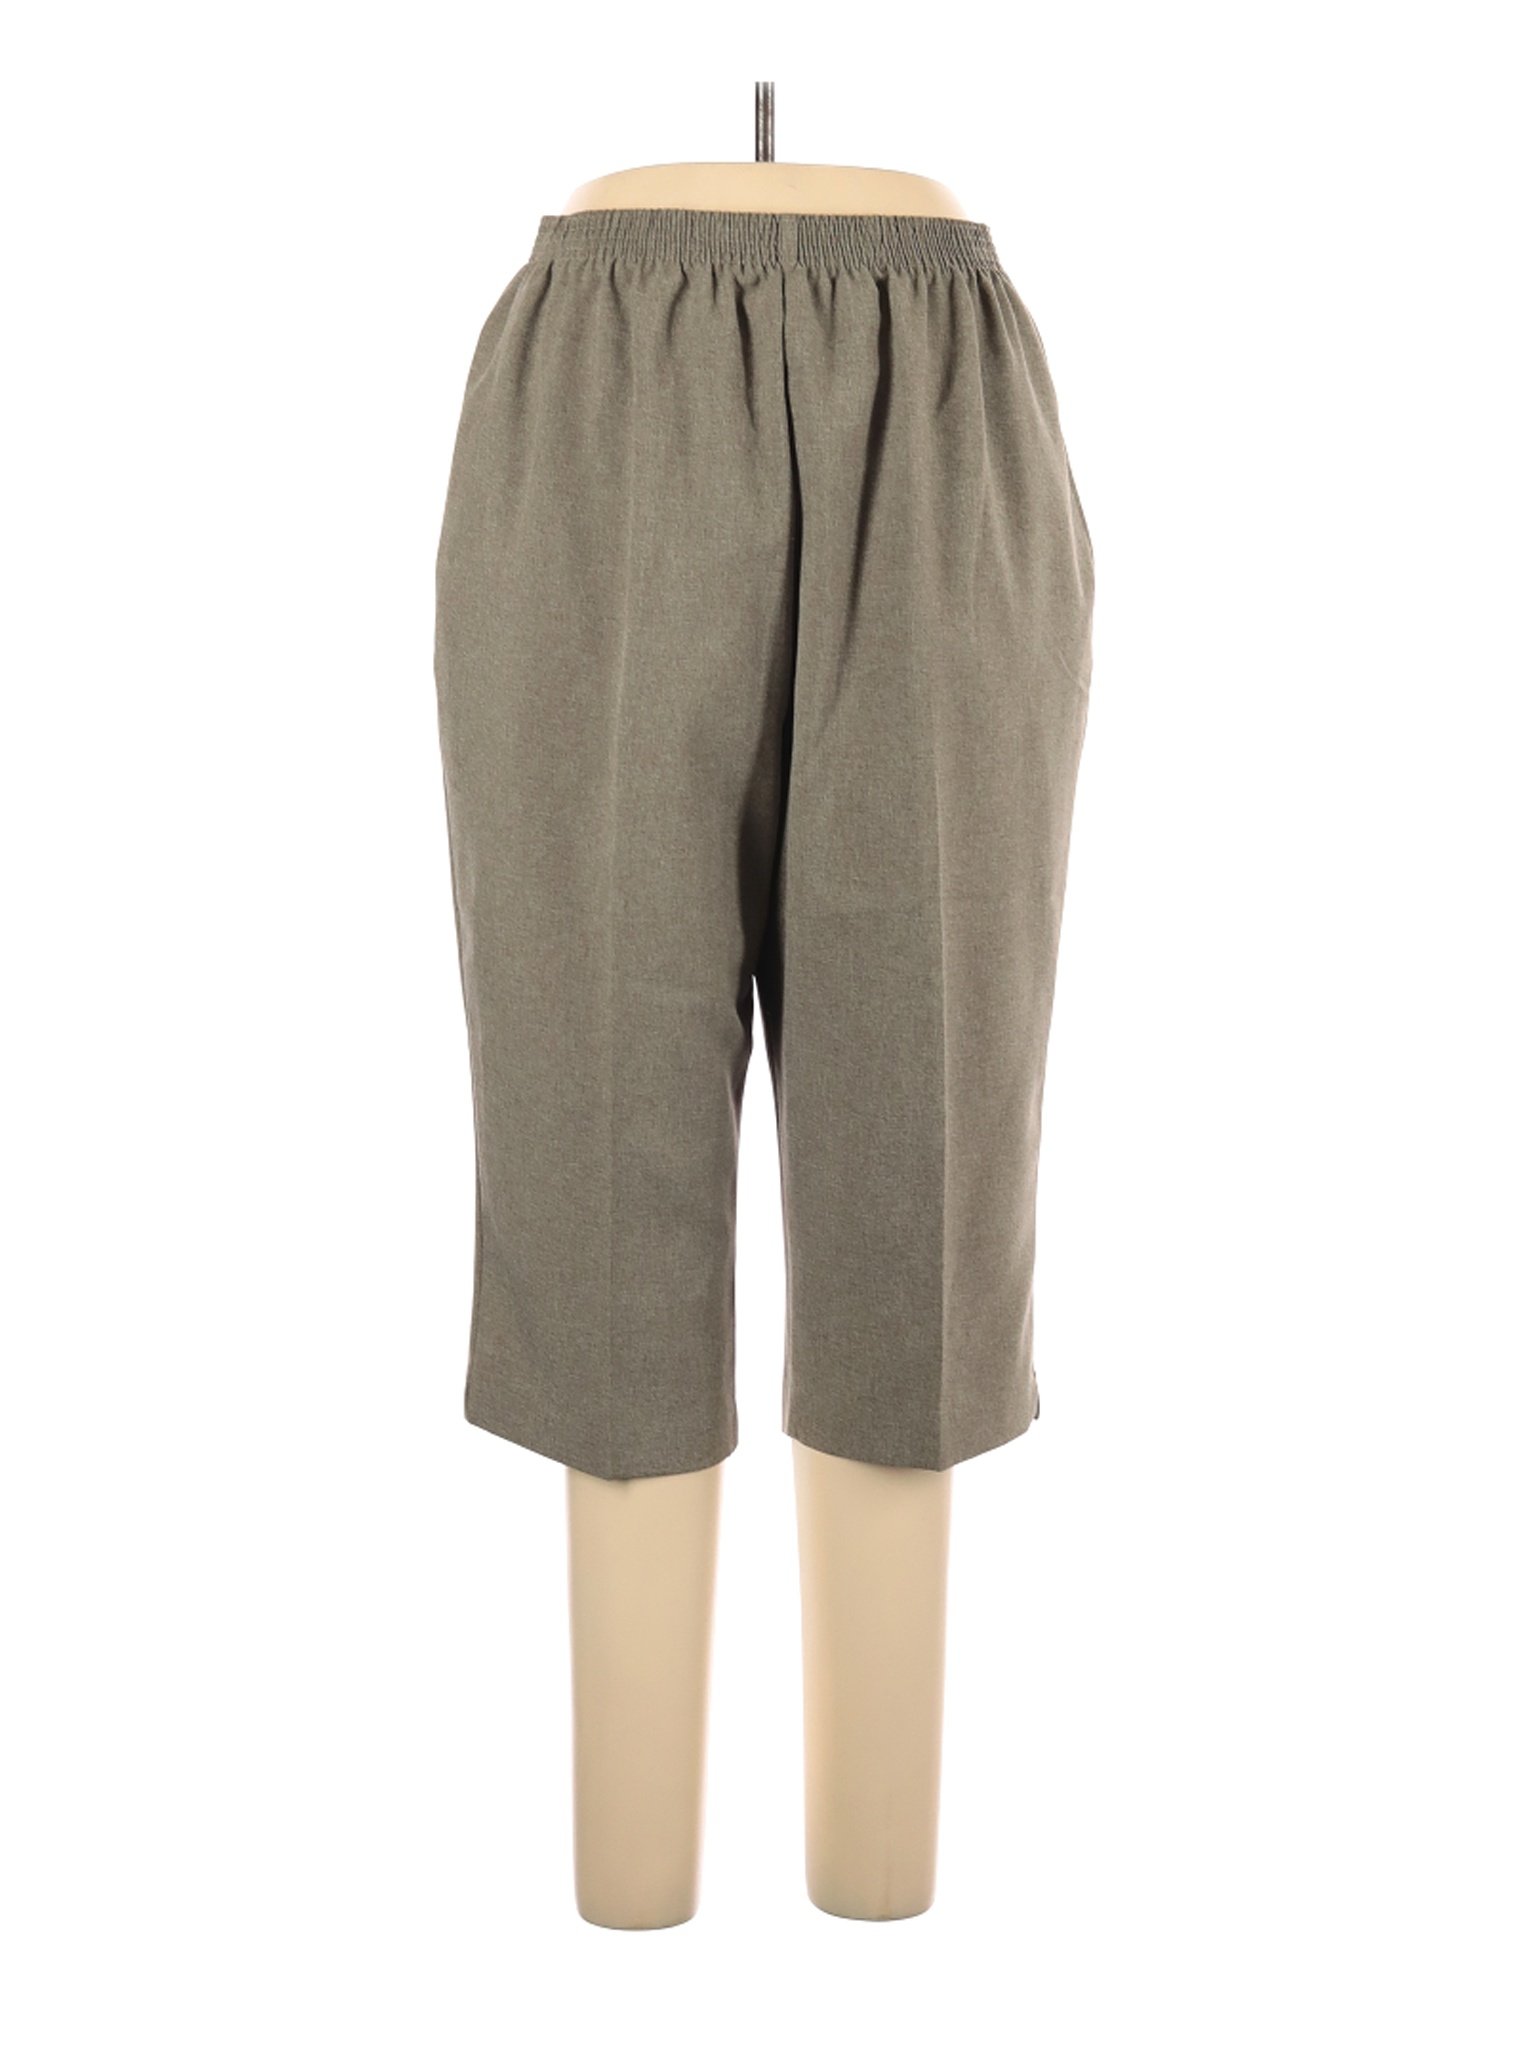 BonWorth Women Brown Casual Pants L Petites | eBay